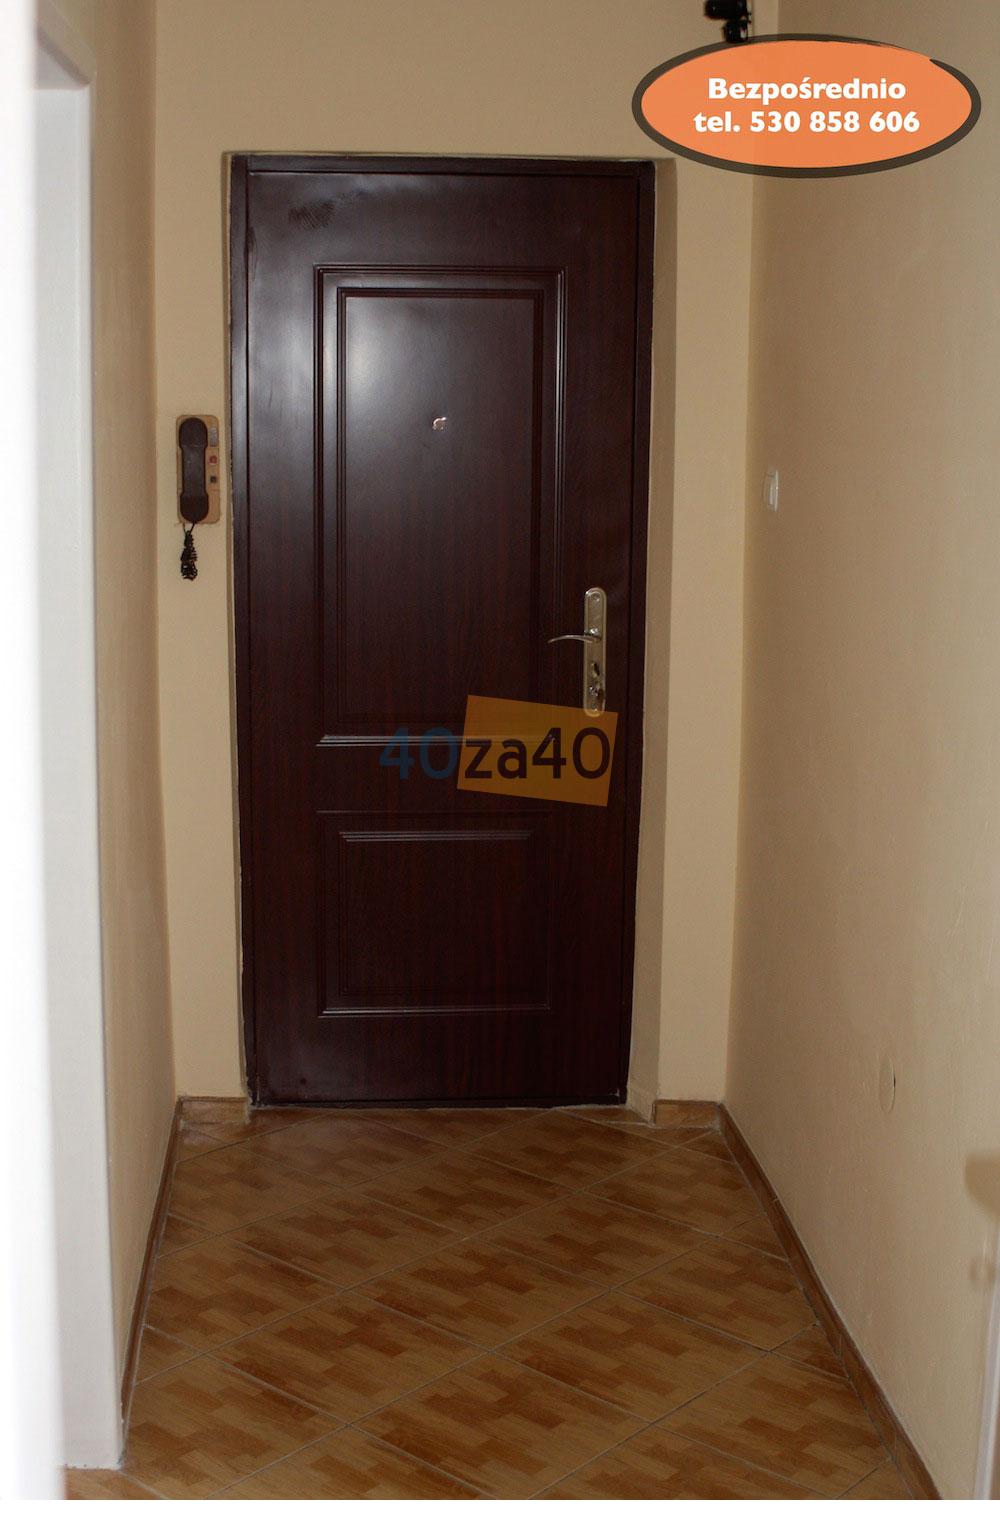 Mieszkanie na sprzedaż, pokoje: 2, cena: 129 997,00 PLN, Gorzów Wielkopolski, kontakt: 530-858606